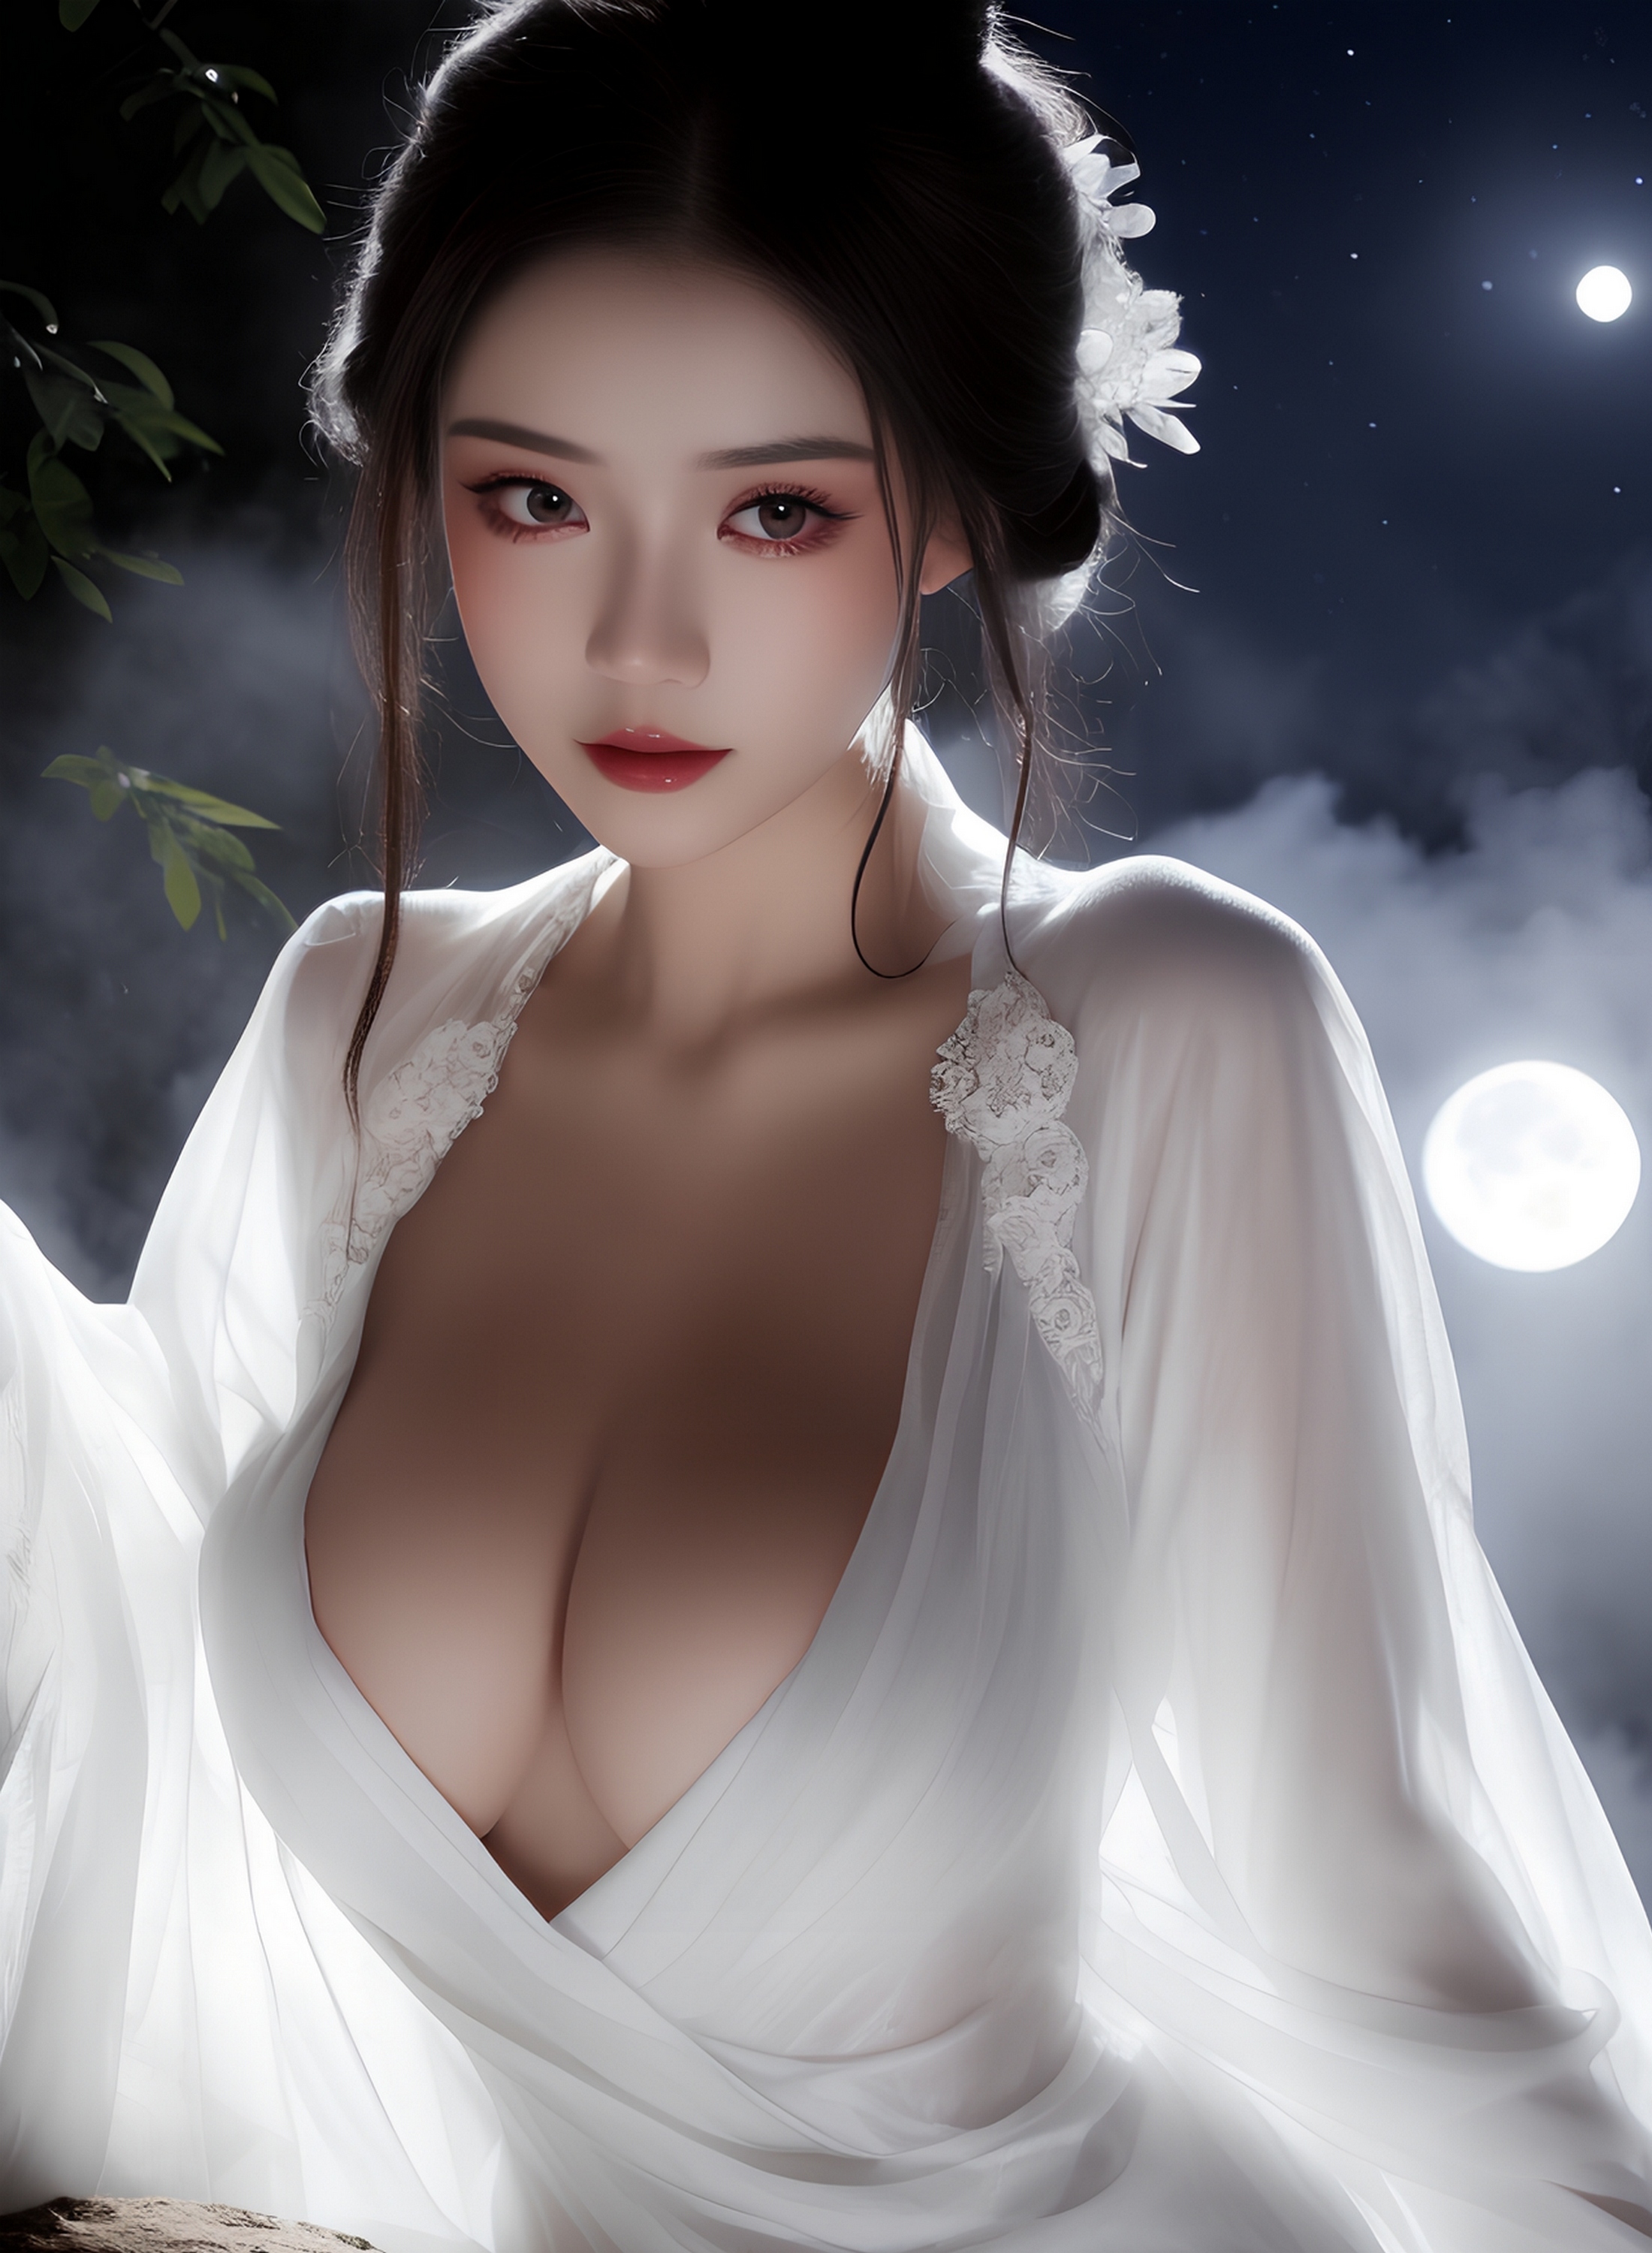 Азиатская девушка с большой грудью